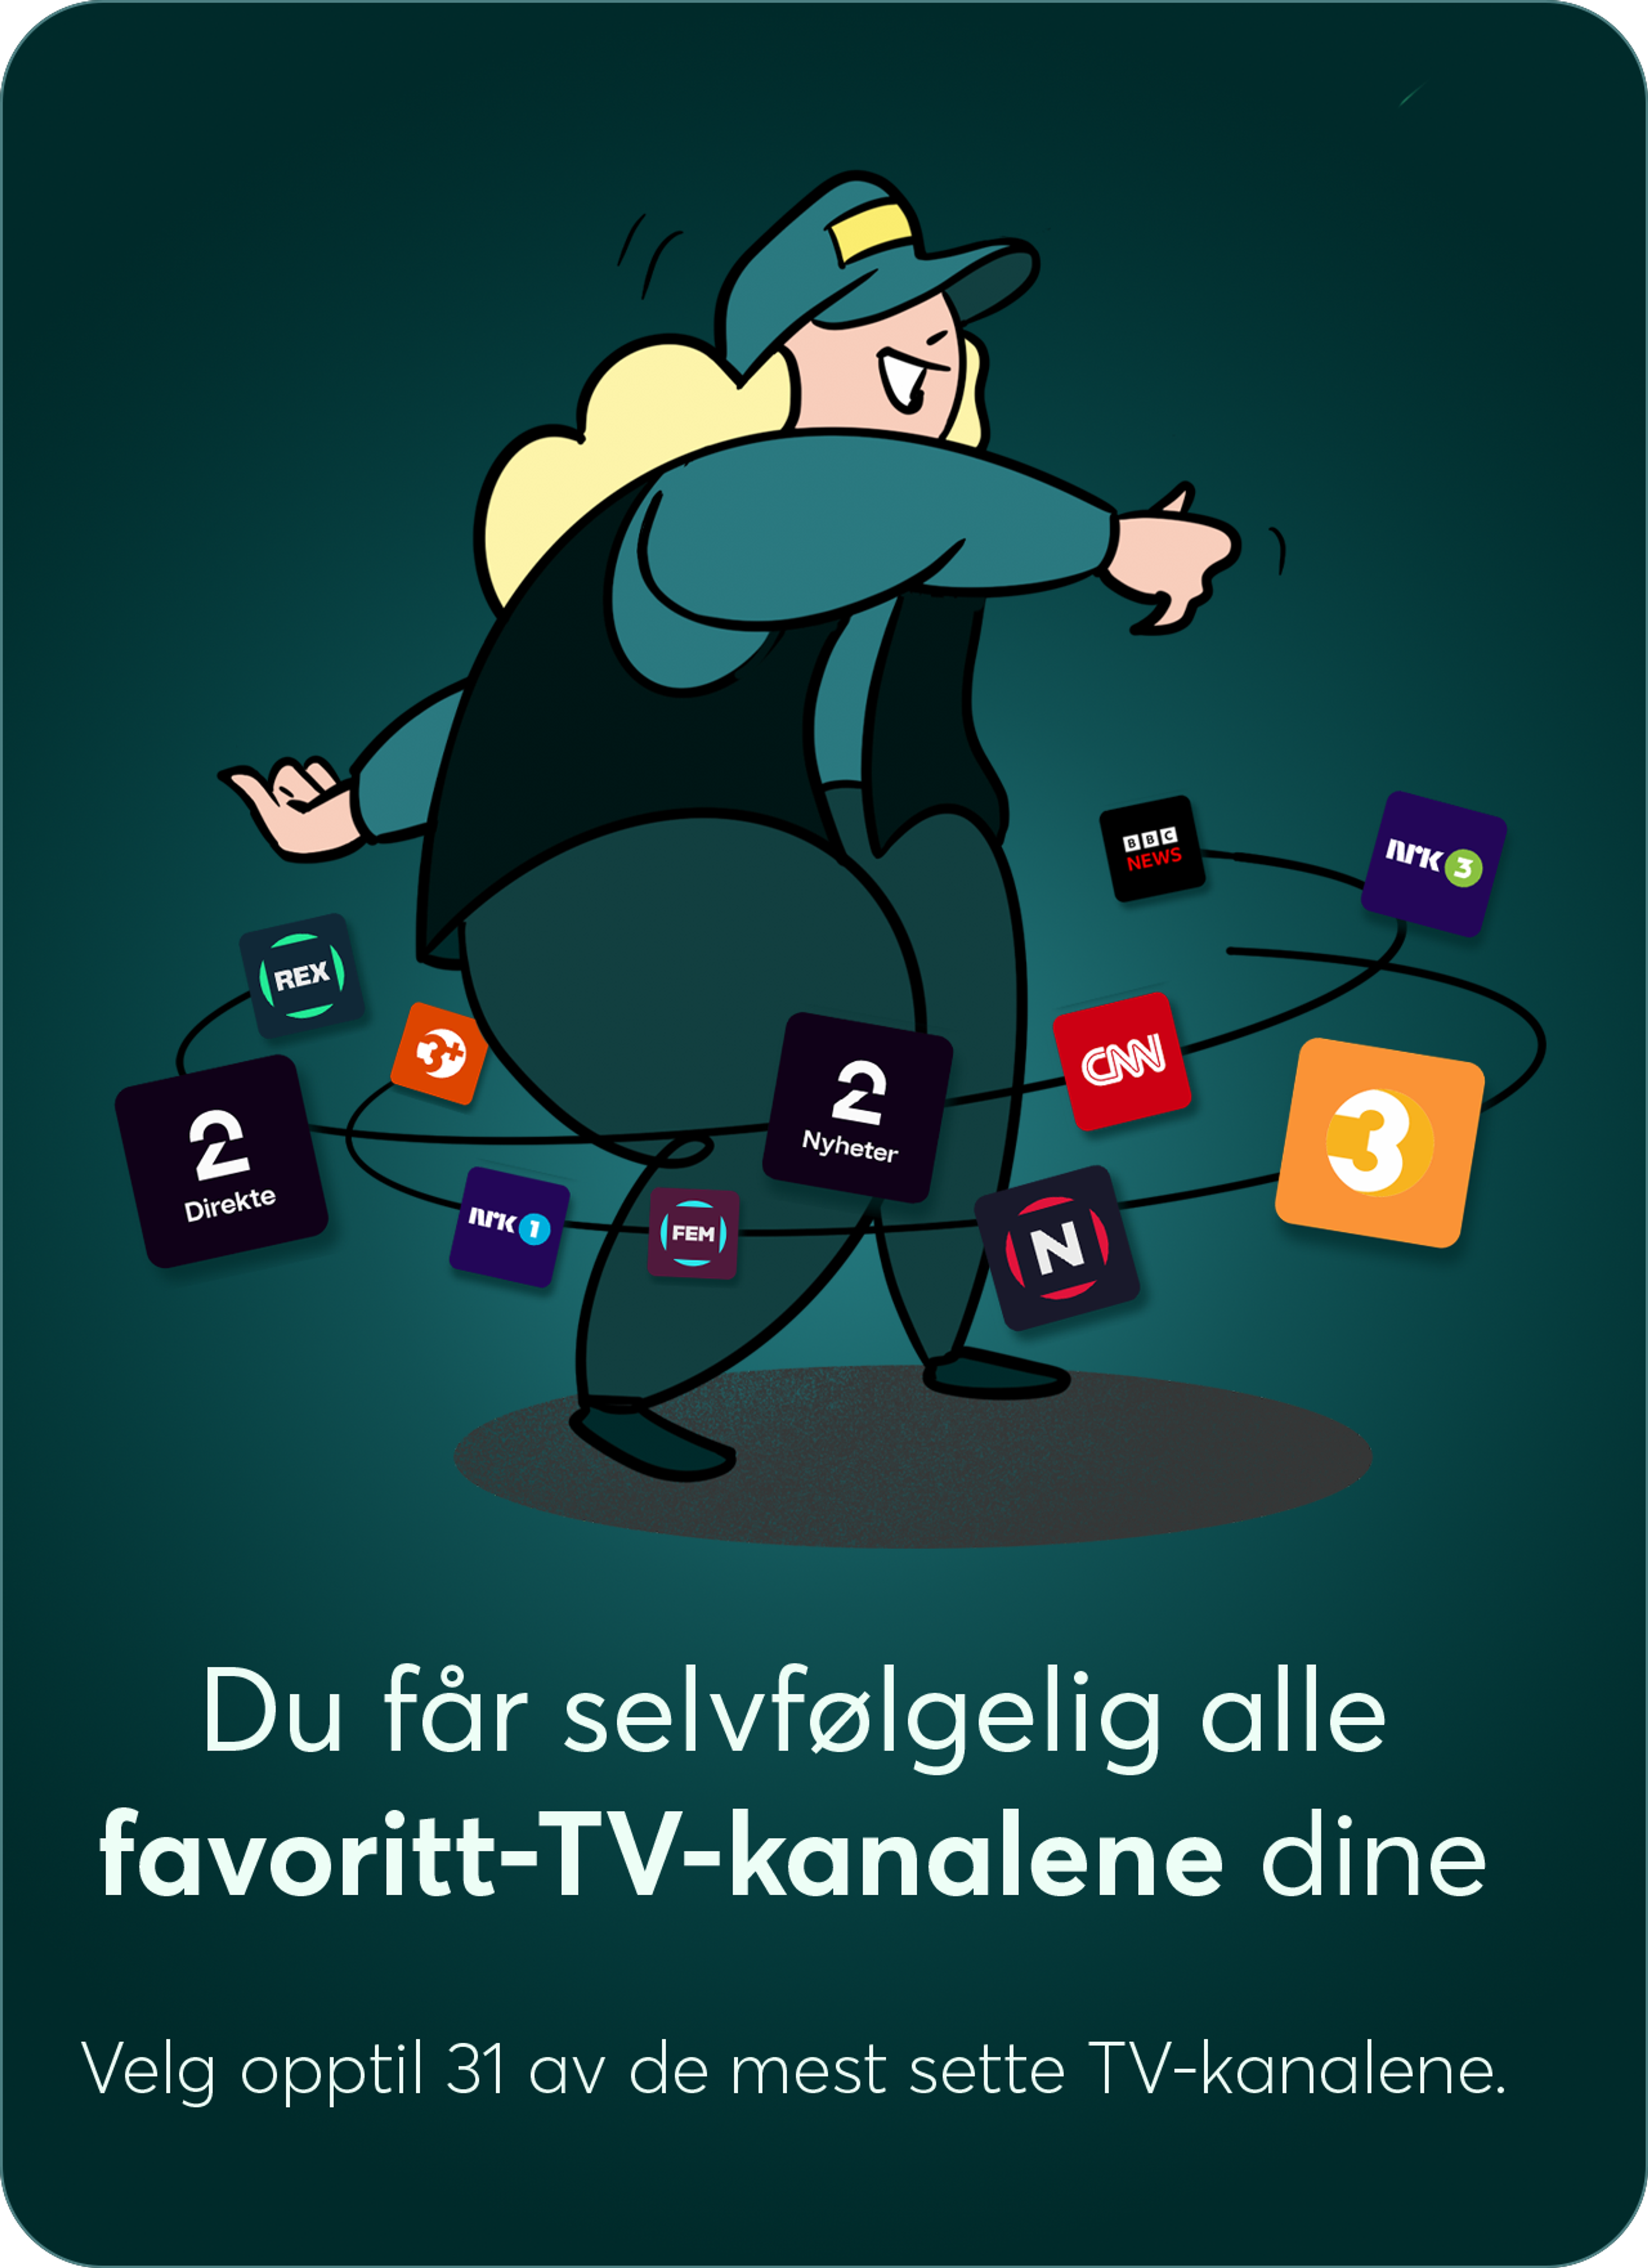 Illustrert dame som danser med ikoner av TV-logoer og teksten "Du får selvfølgelig alle favoritt-TV-kanalene dine."